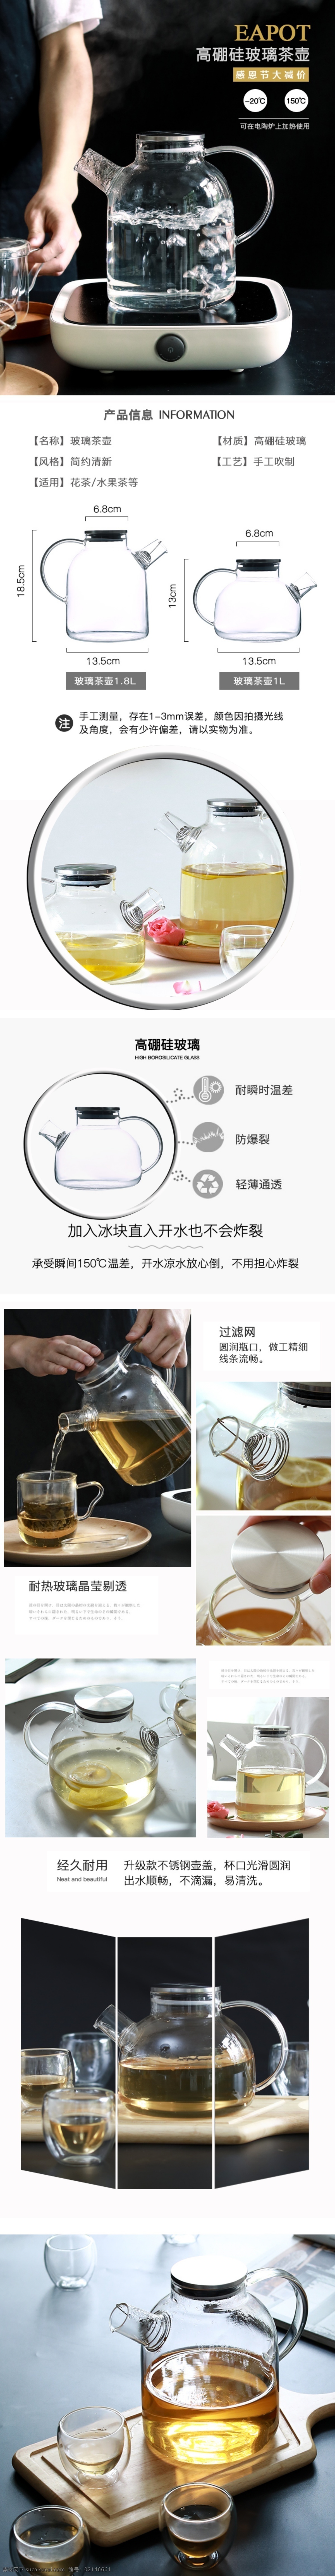 感恩节 玻璃 茶壶 时尚 简约 详情 页 模板 玻璃茶壶 详情页模板